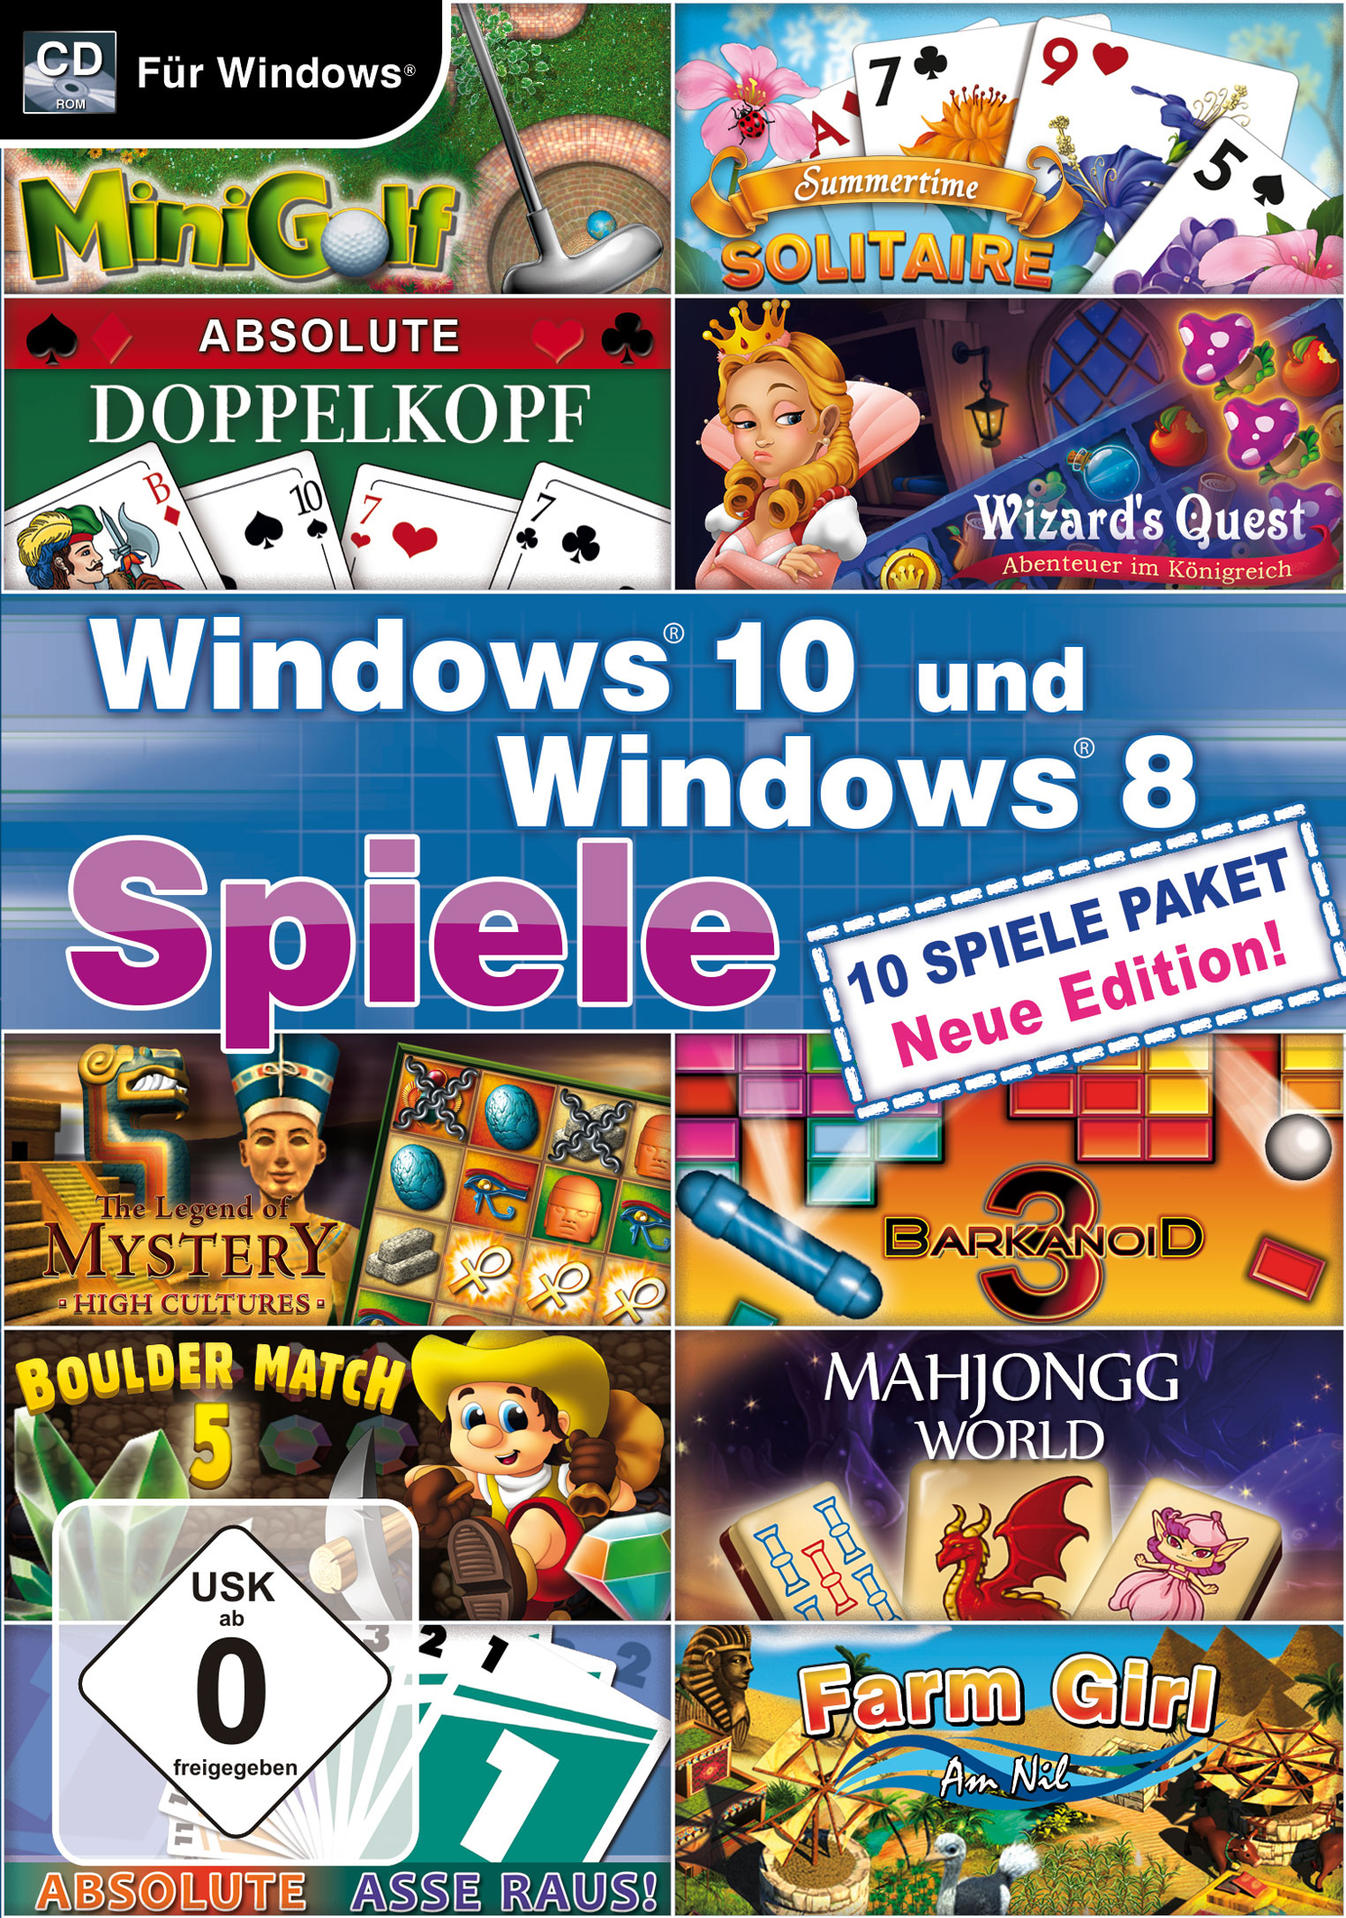 Edition - Neue Windows [PC] - 8 Windows 10 Spiele und